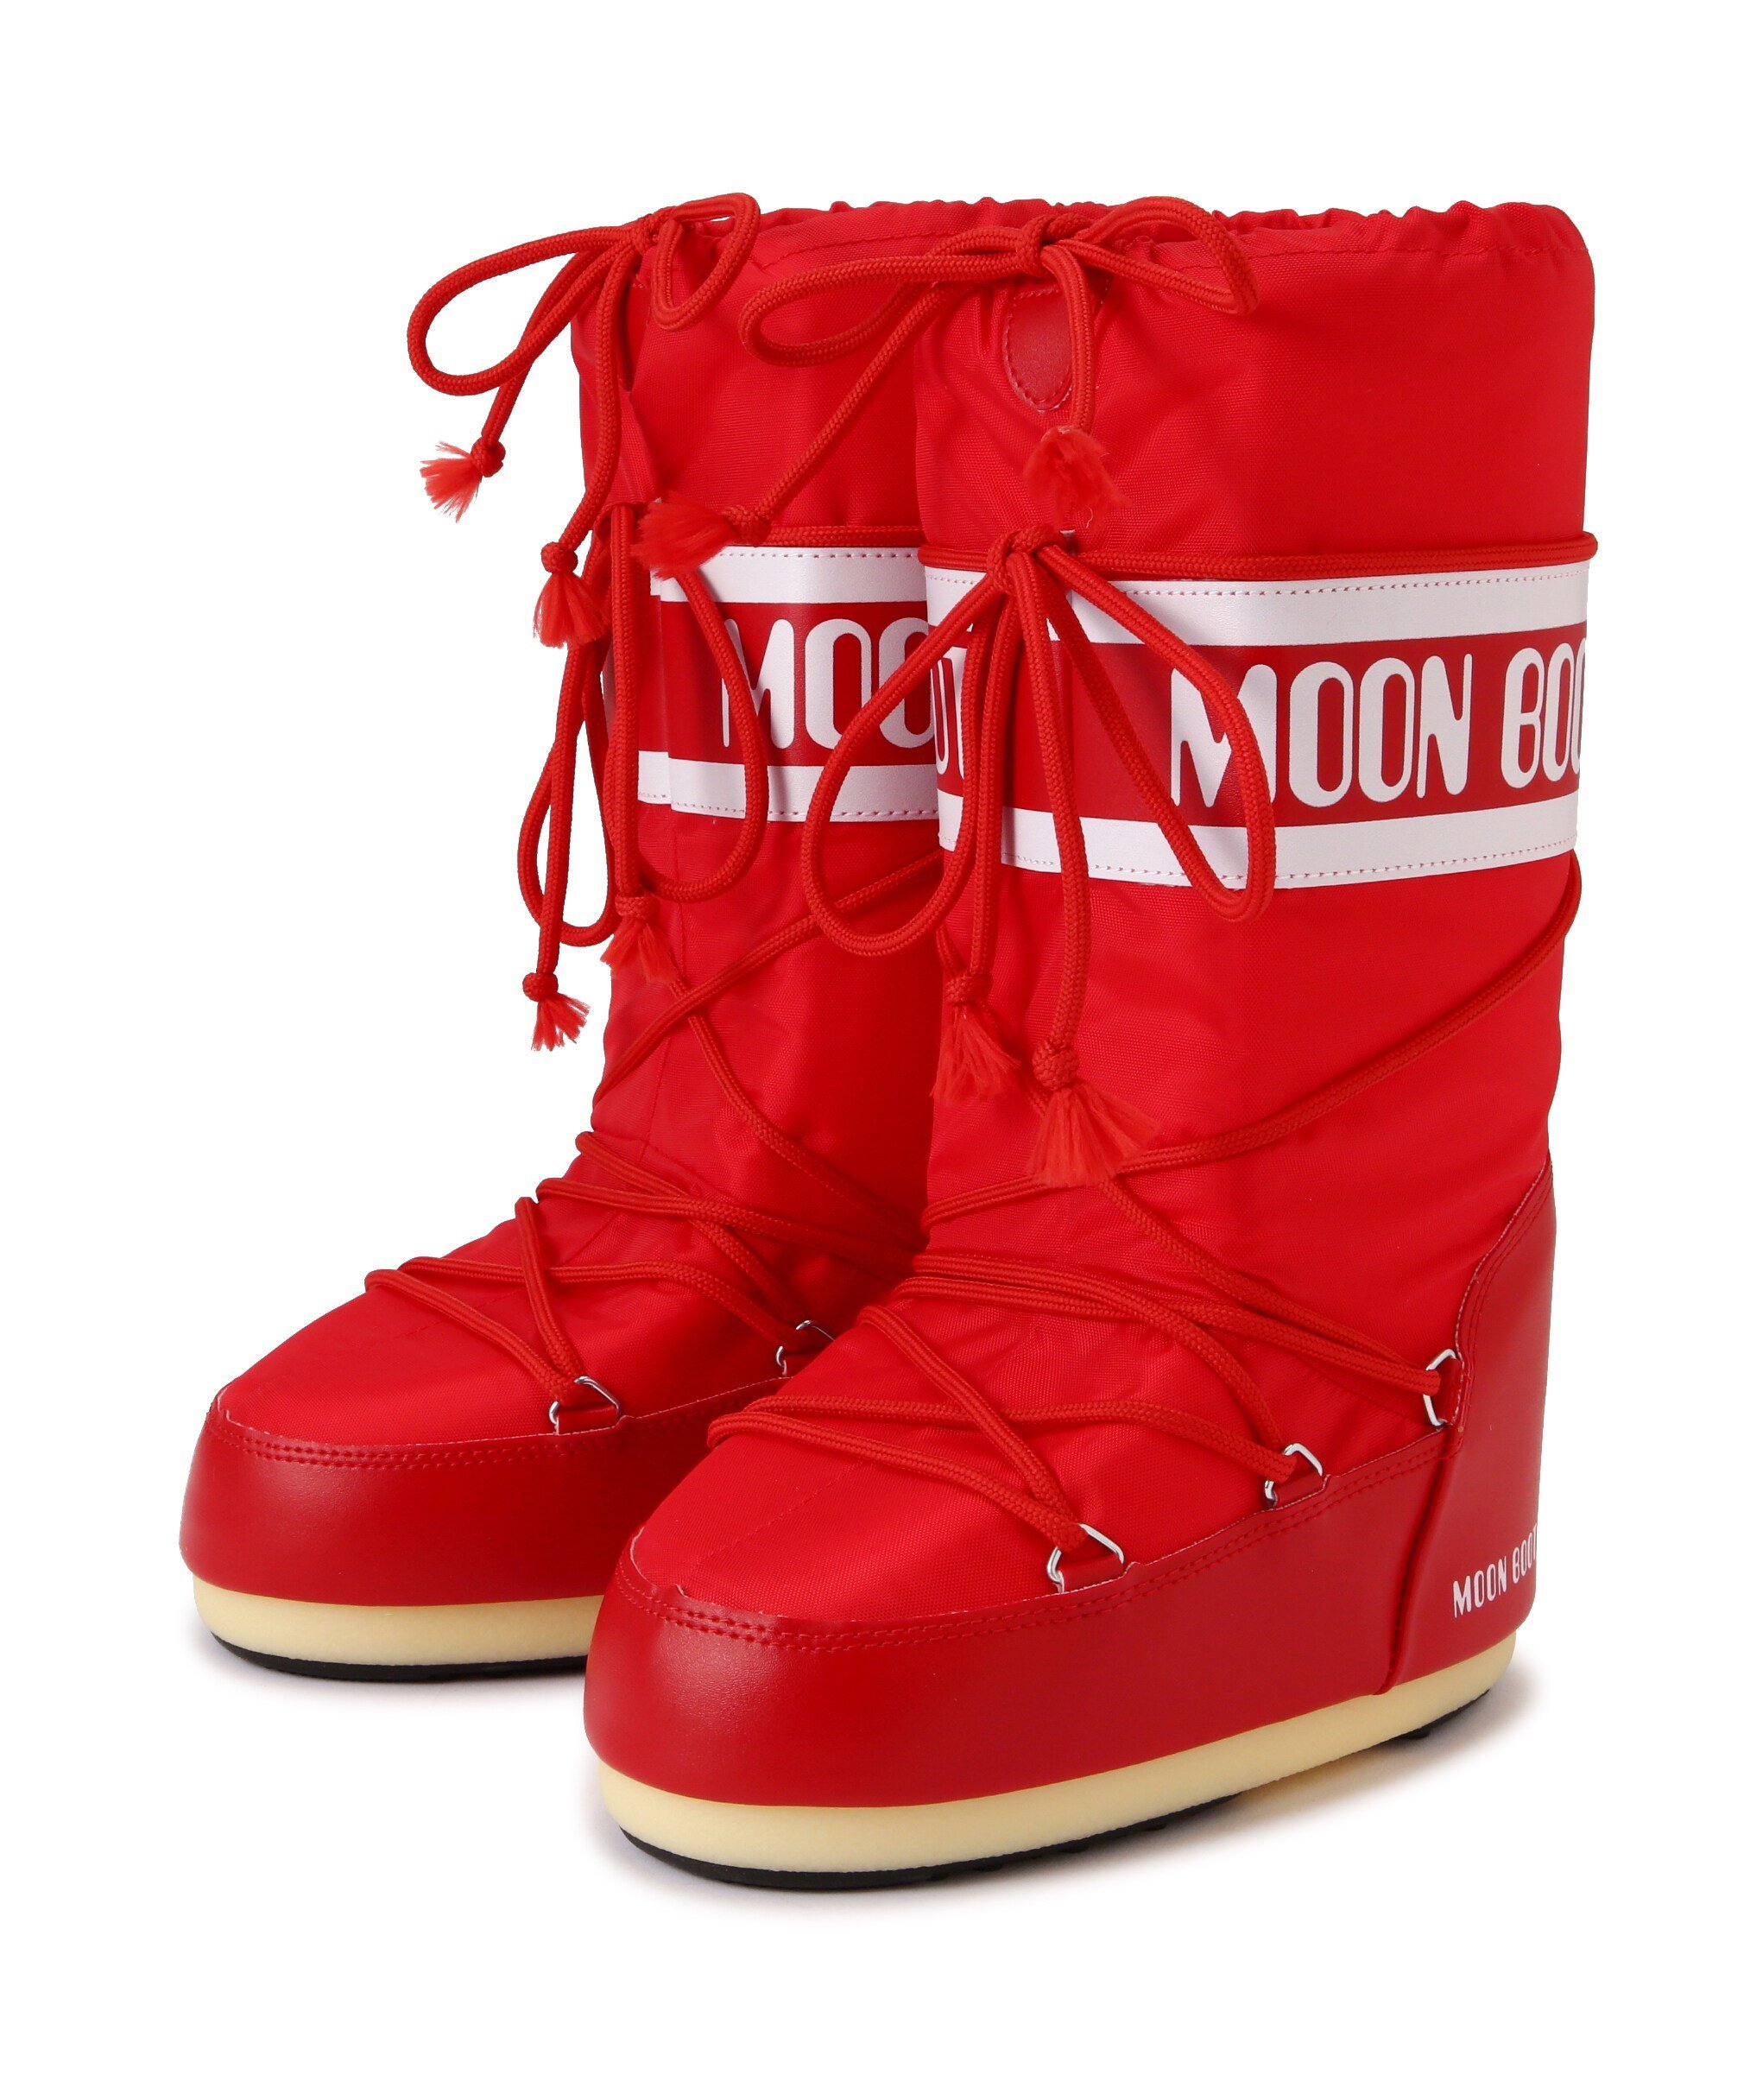 ROYAL FLASH MOON BOOT/ムーンブーツ/ICON NYLON BOOTS/14004400 ロイヤルフラッシュ シューズ・靴 その他のシューズ・靴 レッド ホワイト イエロー【送料無料】